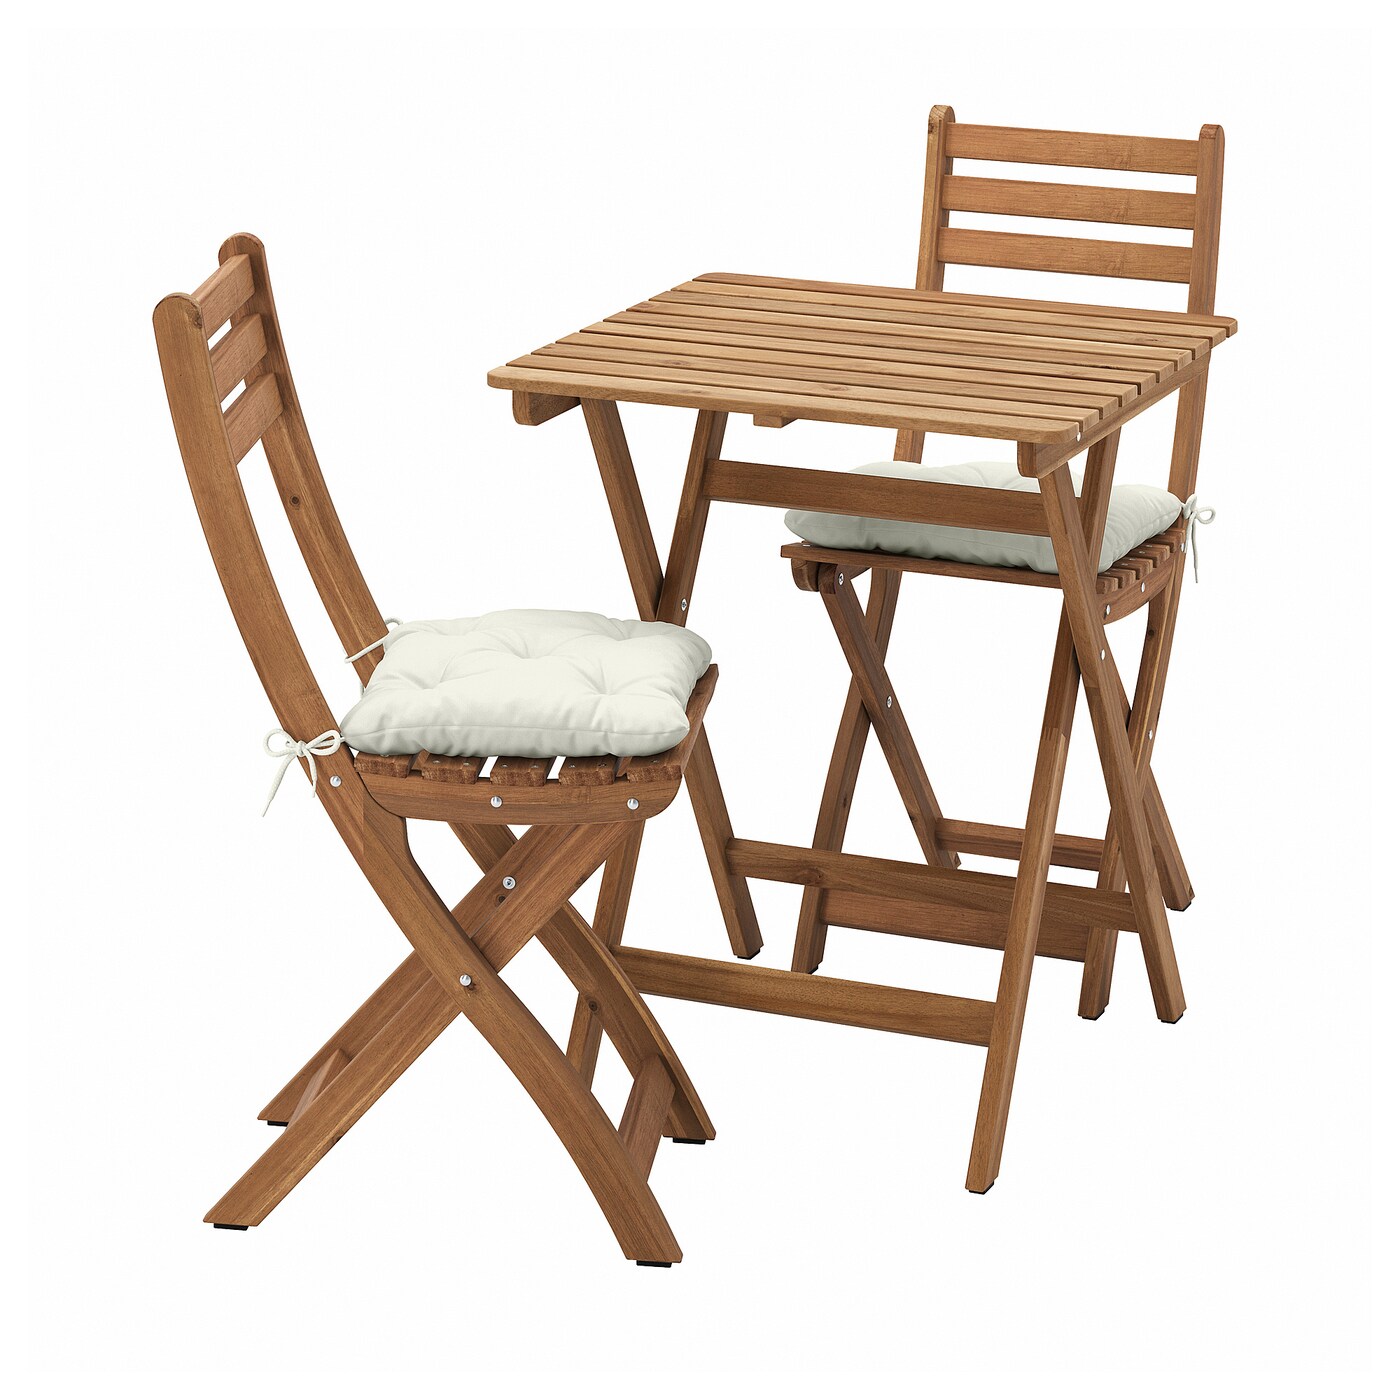 Садовый стол и 2 стула - ASKHOLMEN IKEA/ АСКХОЛЬМЕН ИКЕА,  62х60 см, коричневый